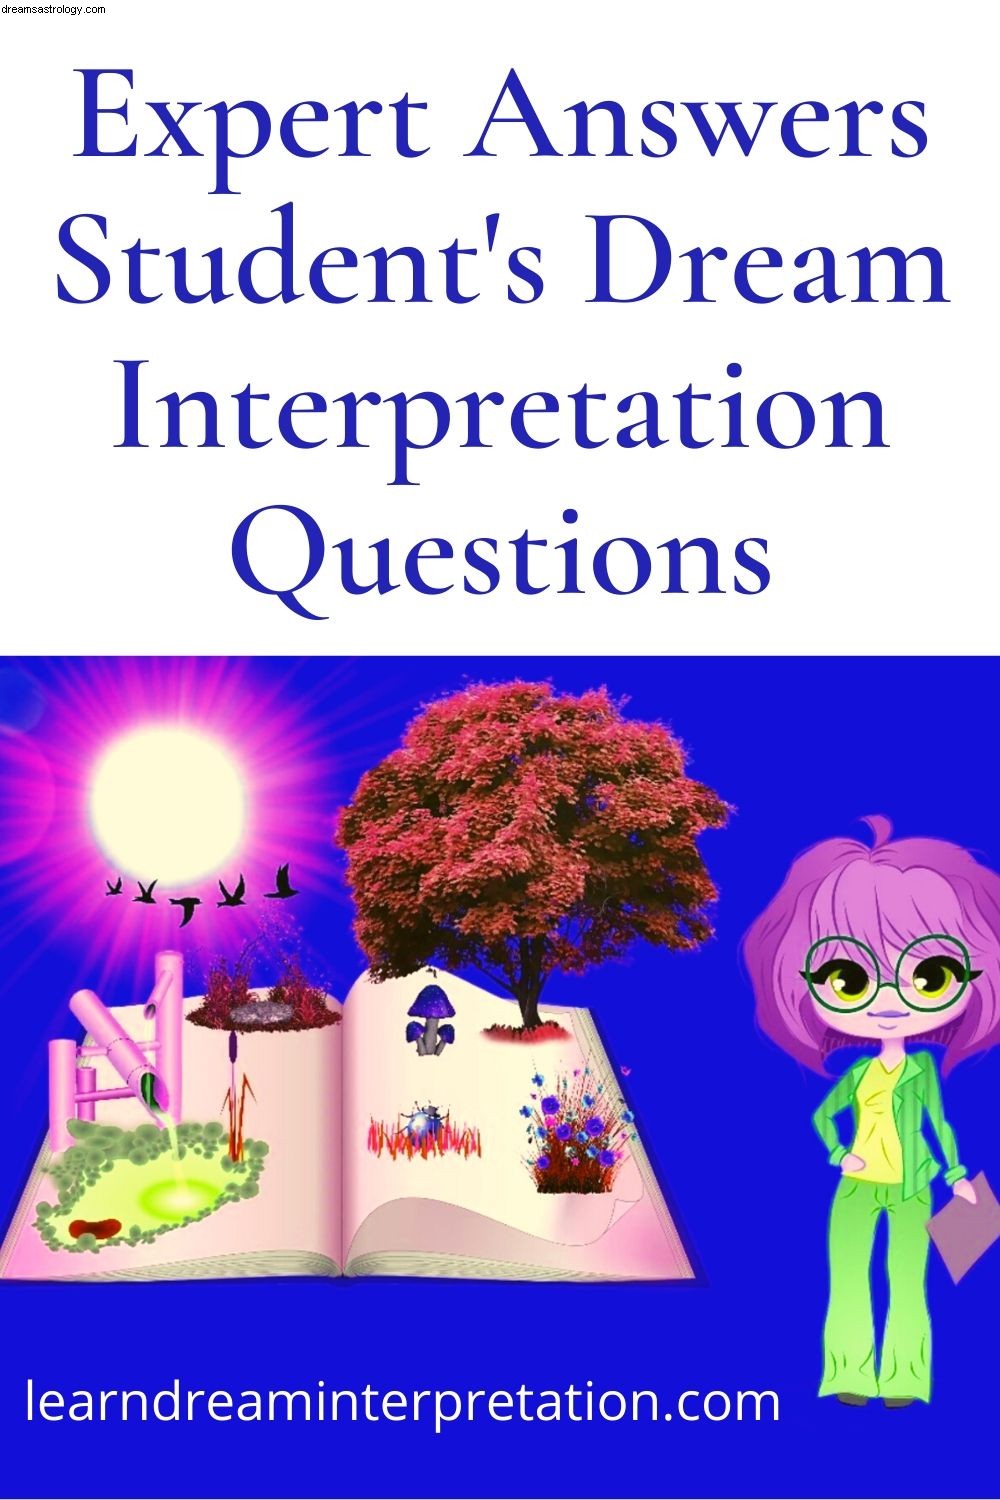 Odpowiedzi na pytania dotyczące interpretacji snów 